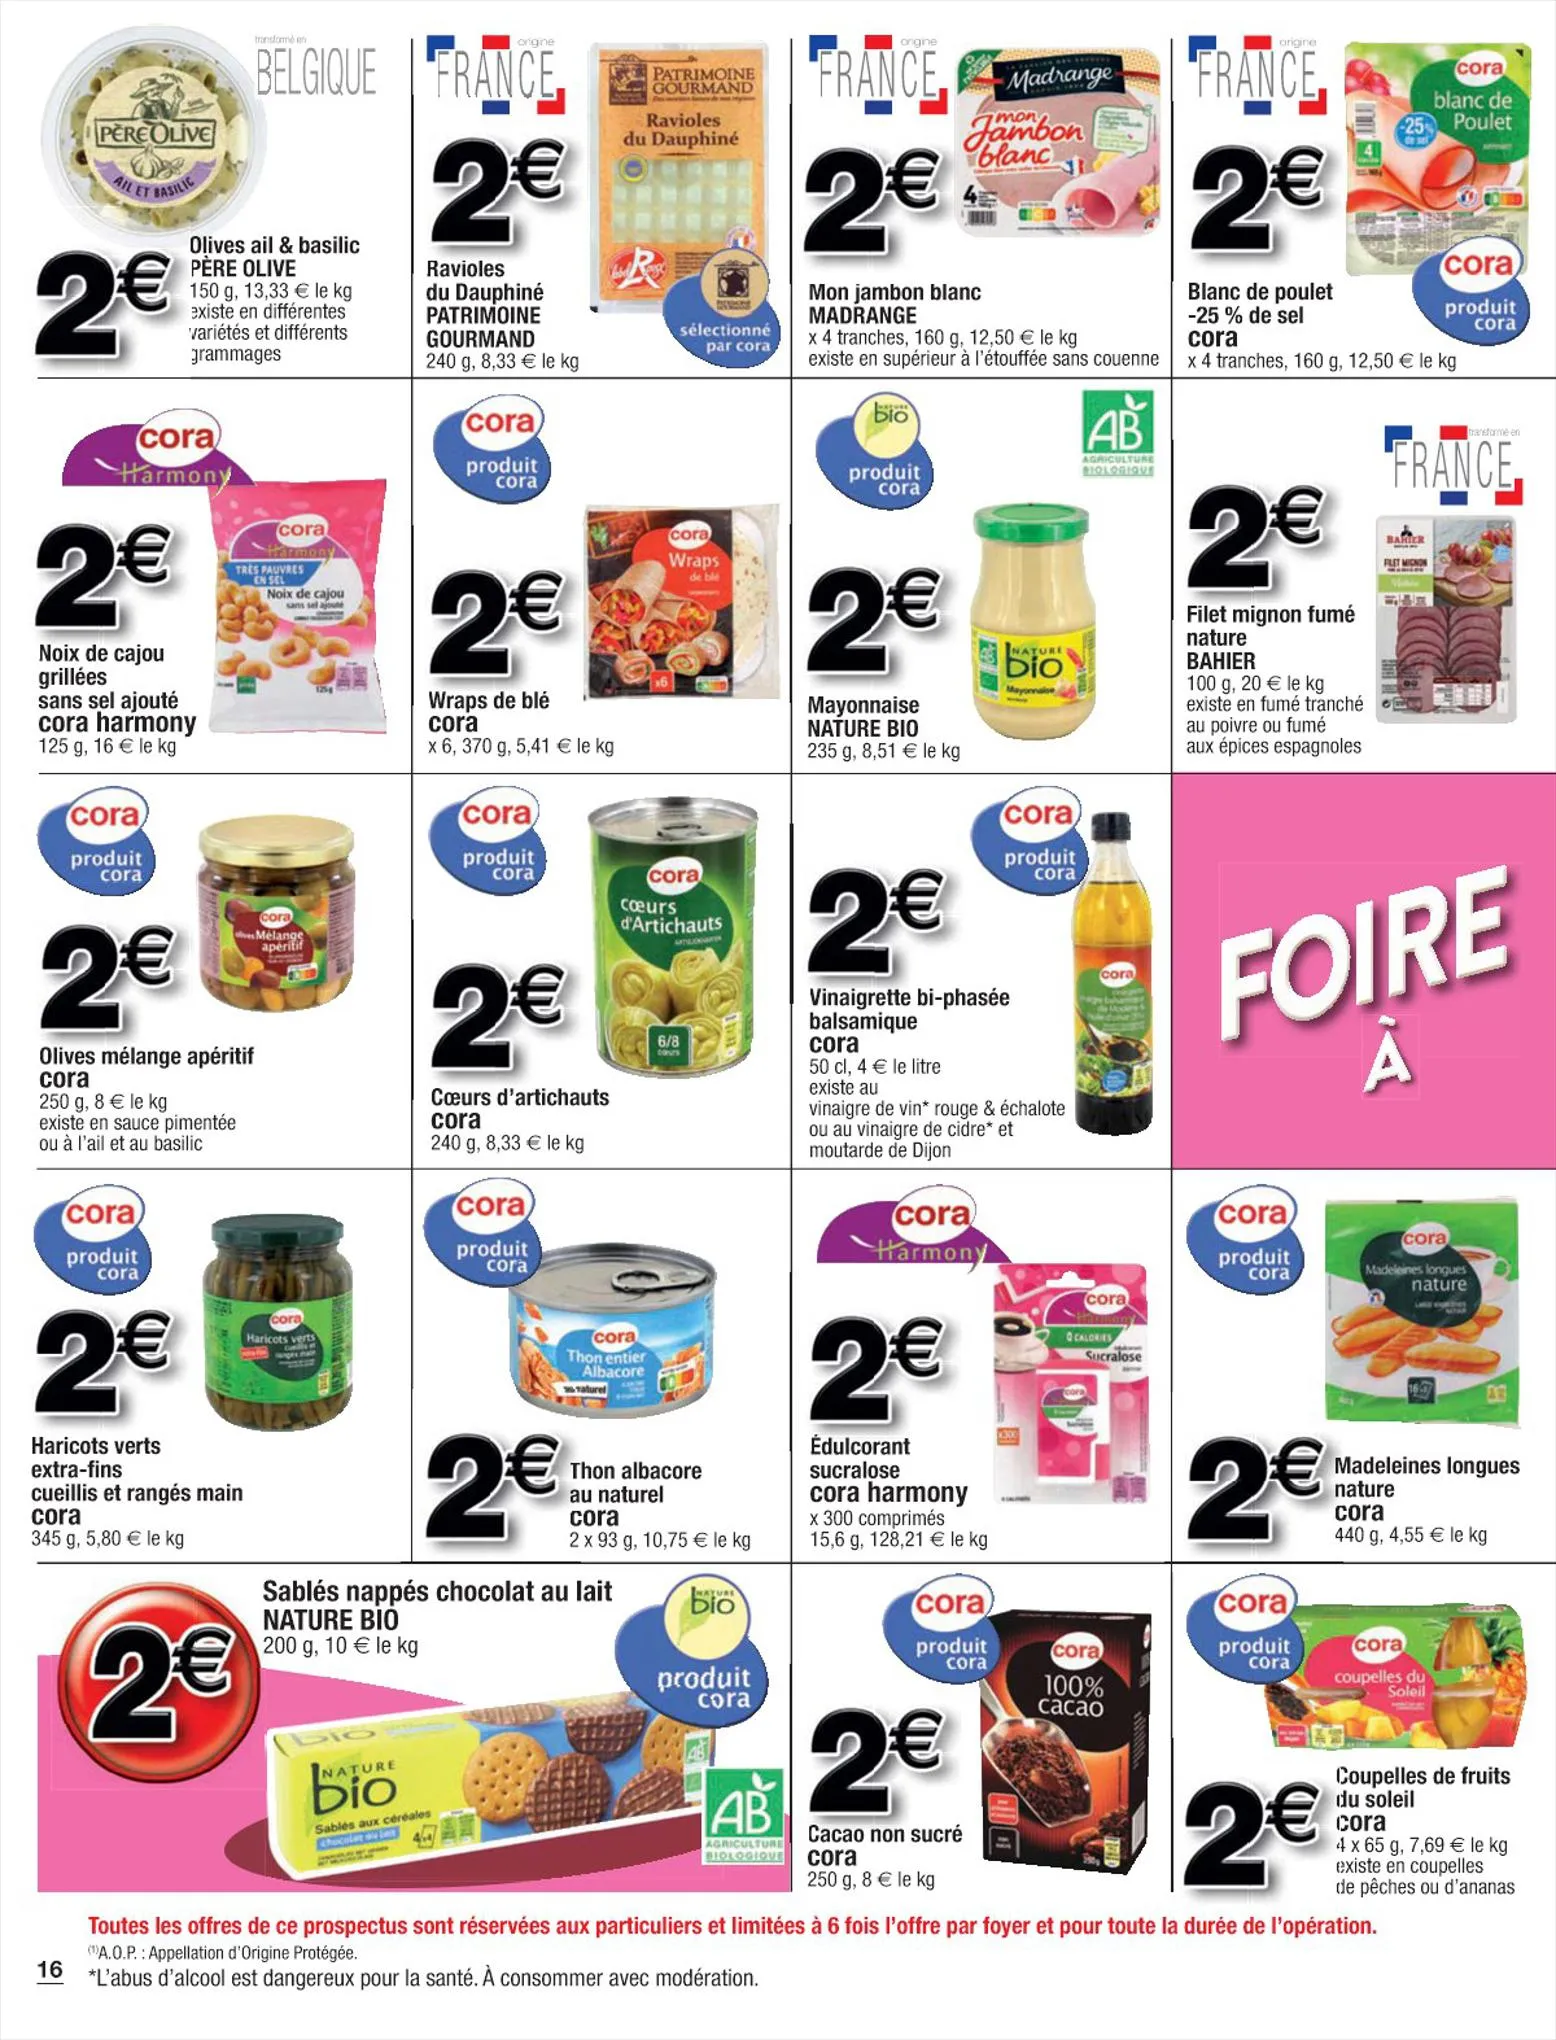 Catalogue Foire à 1 euro, page 00016